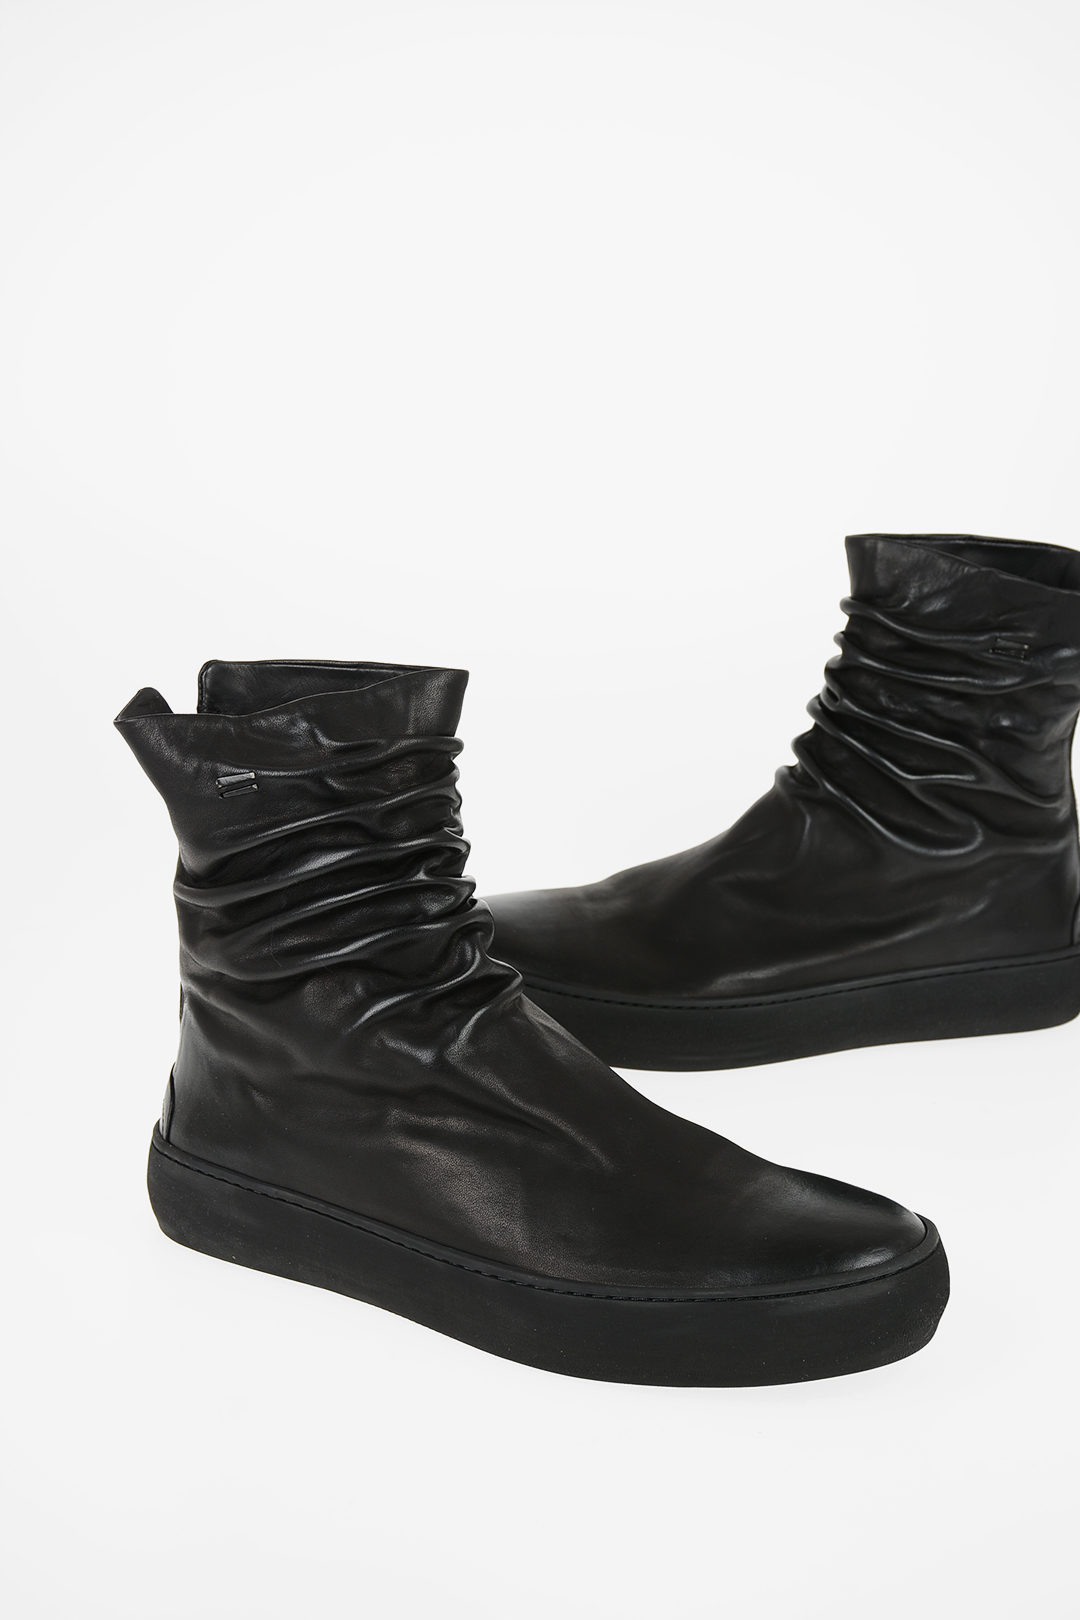 frakobling Kan ikke lide spion The Last Conspiracy Leather FINN Ankle Boots men - Glamood Outlet